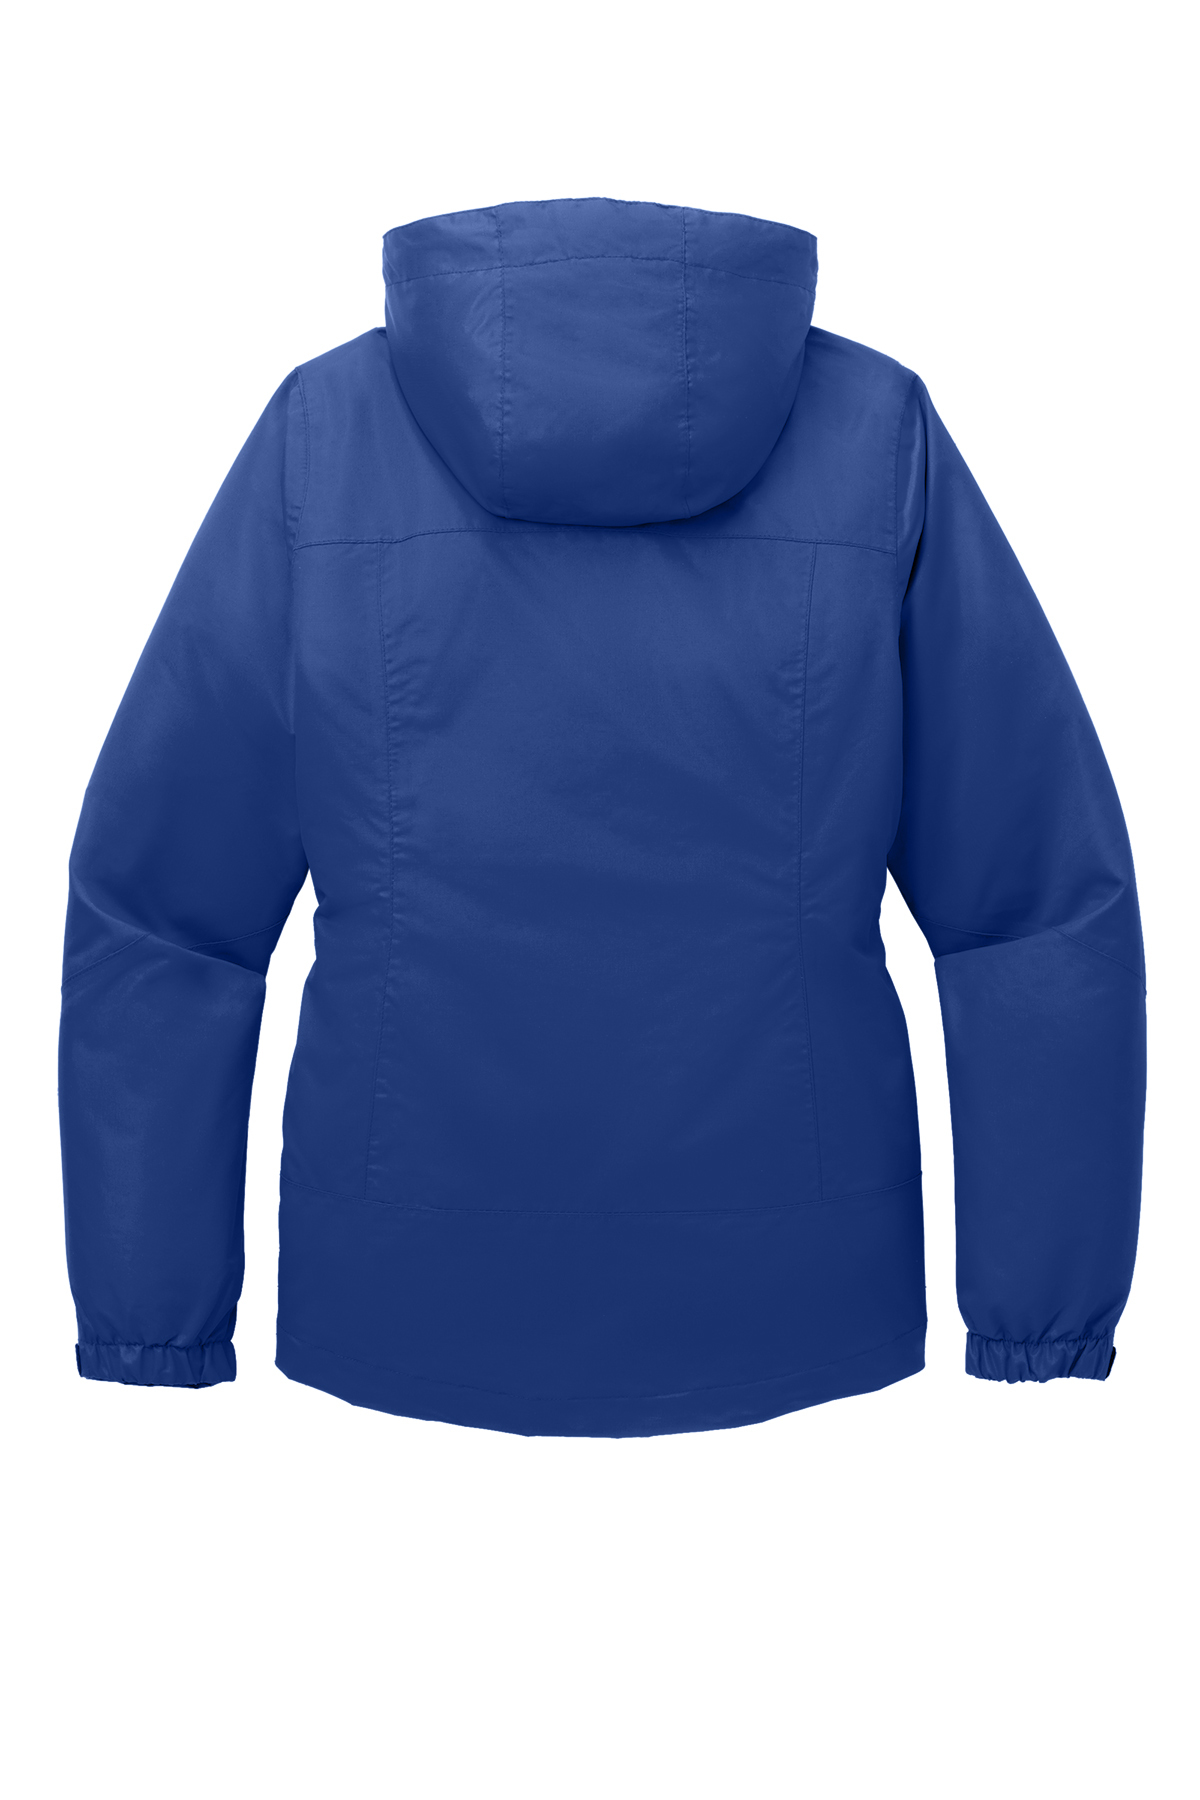 Port Authority Vortex Waterproof 3-in-1 Jacket for Women